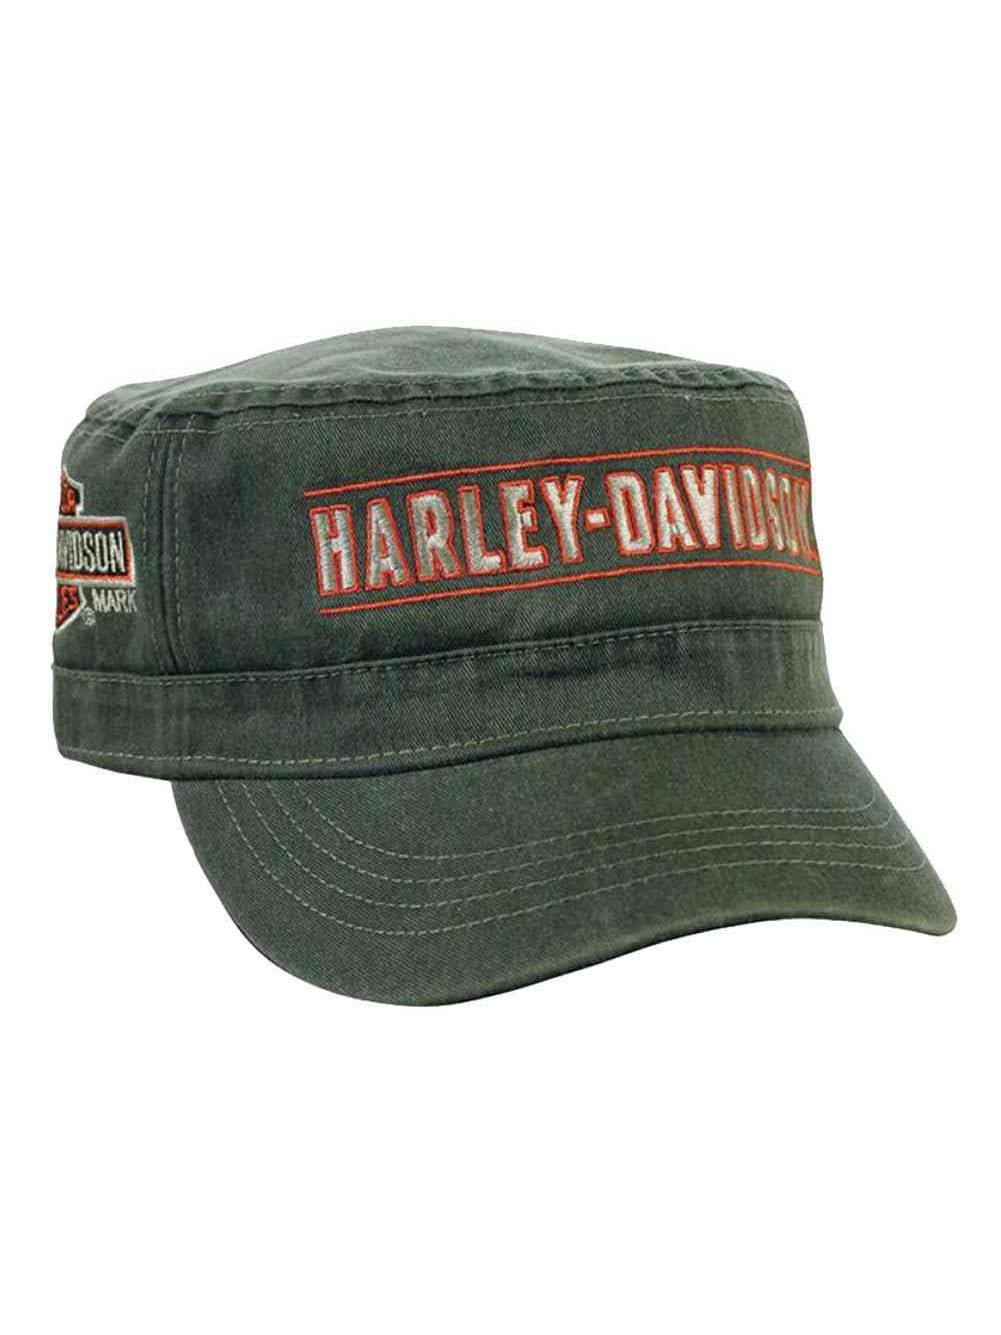 Harley-Davidson - Men's Embroidered H-D Script Painter's Cap, Olive